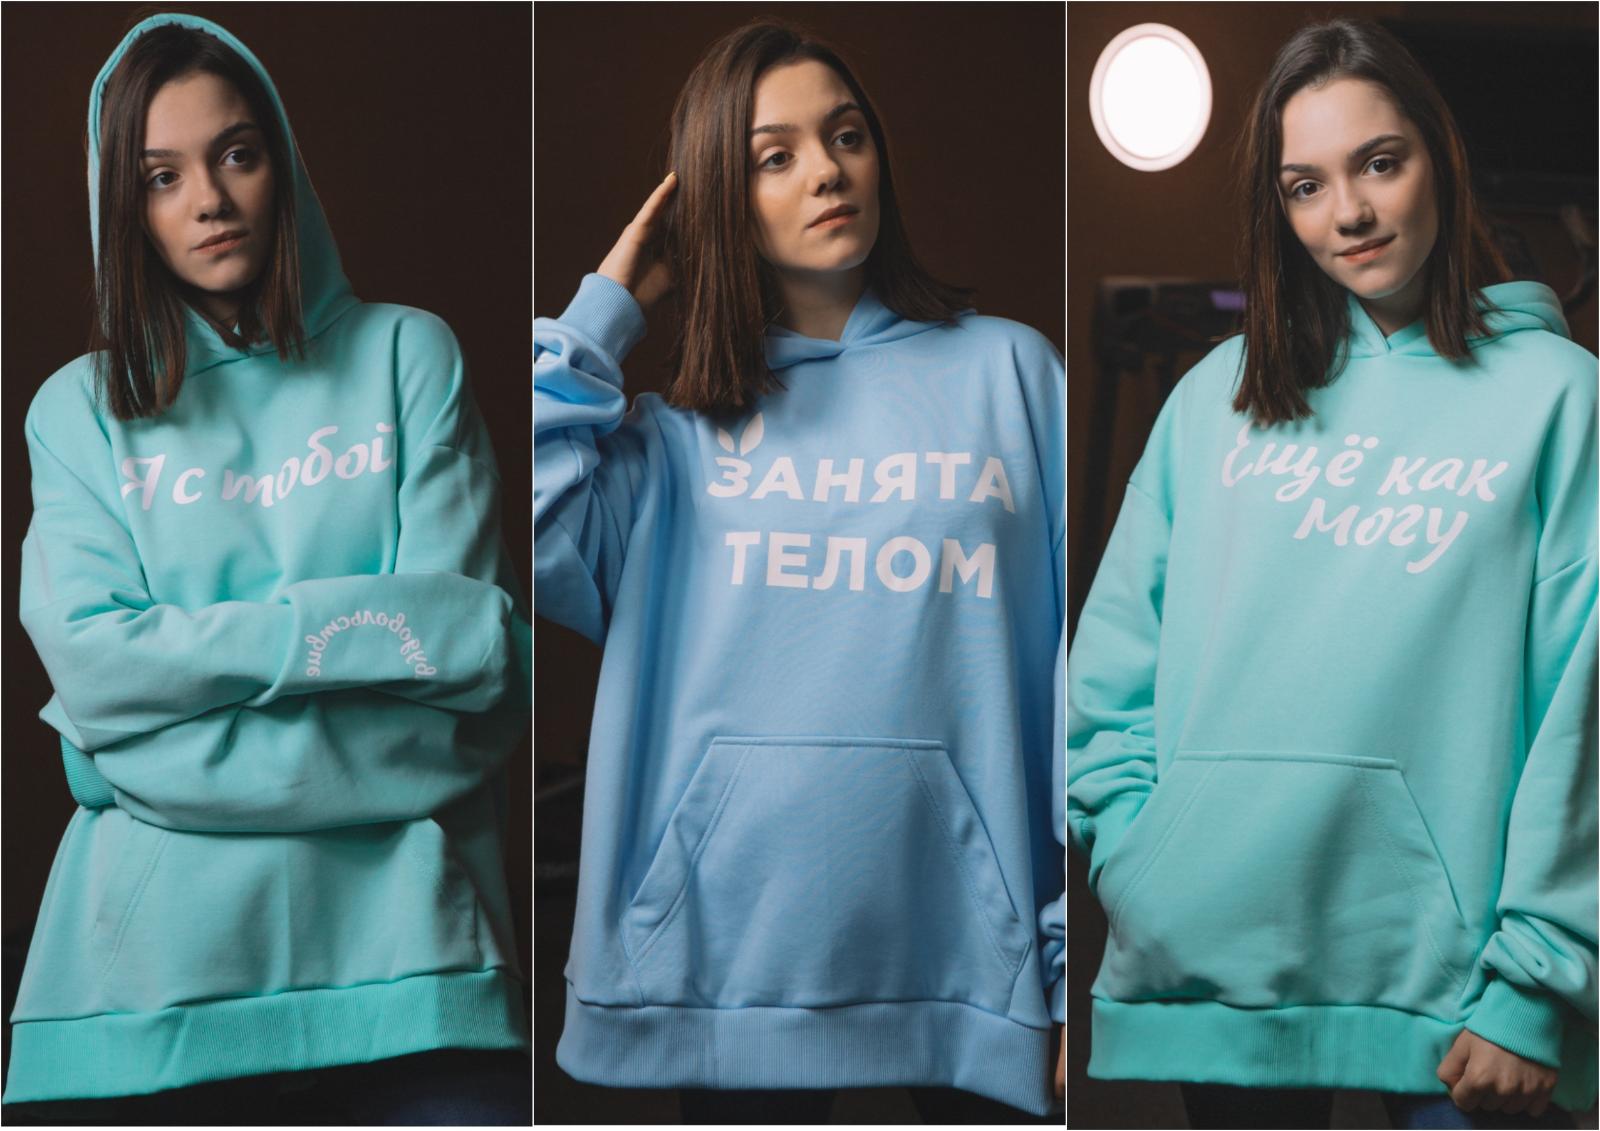 Евгения Медведева выпустила мотивирующую к победам капсульную коллекцию одежды